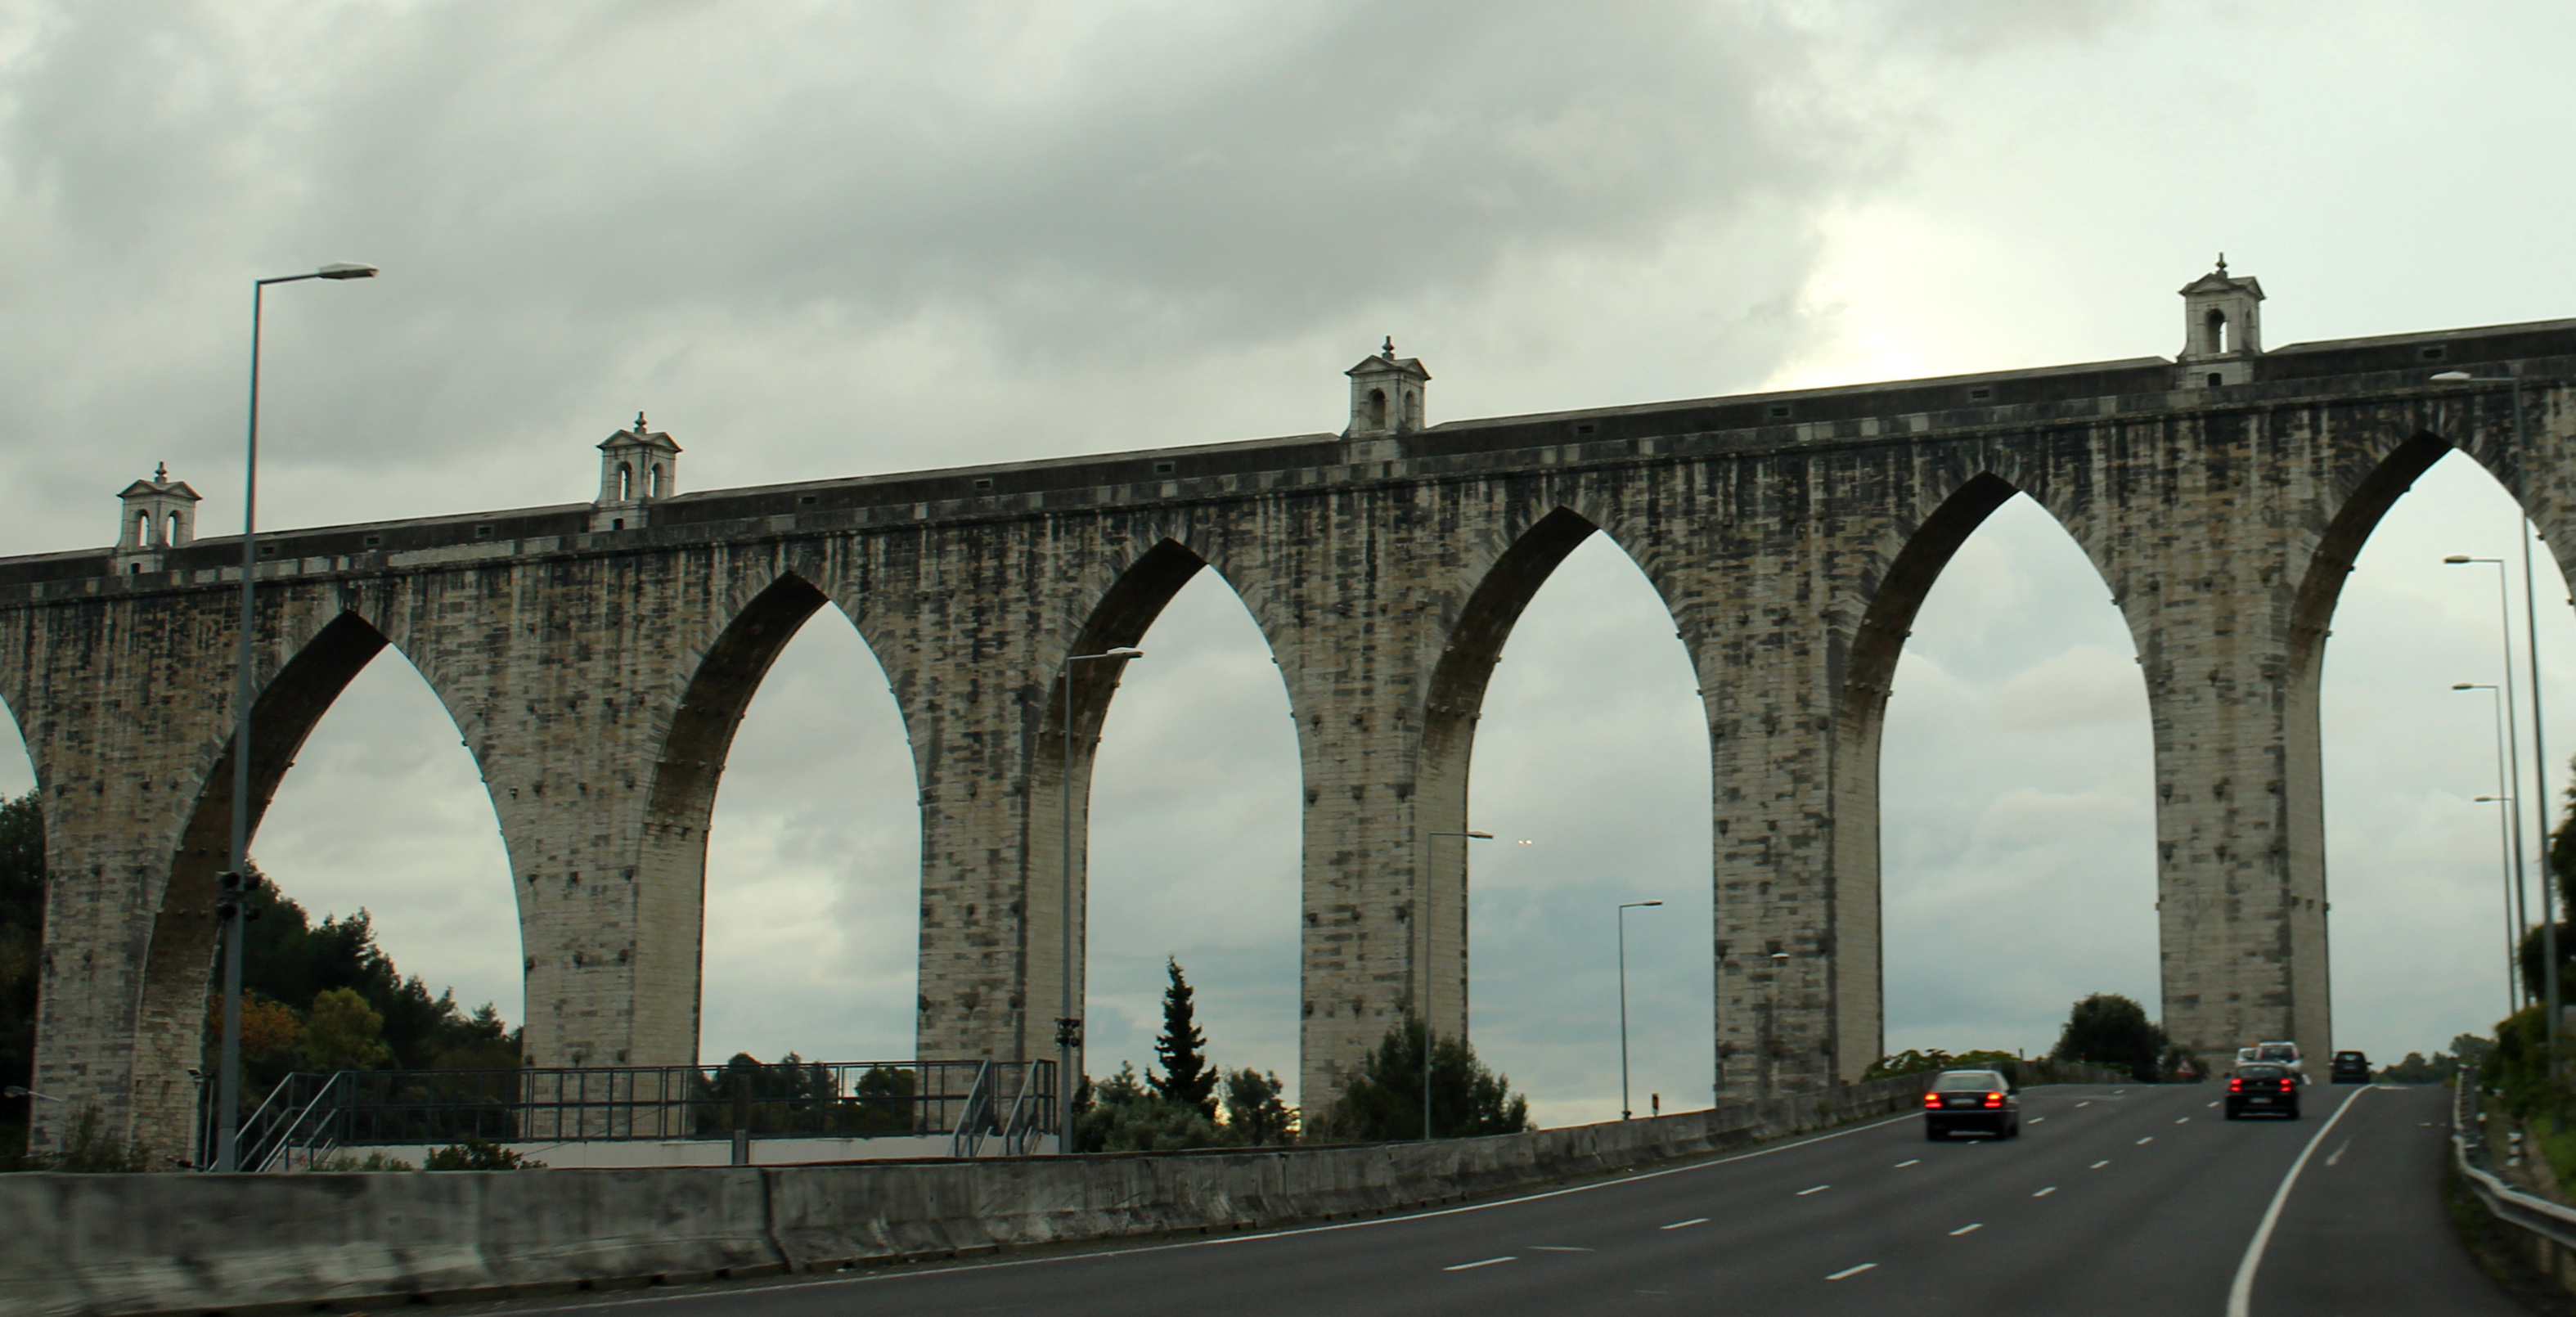 Aguas Livres Aqueduct, Aqueduct, Architecture, Baroque, Bridge, HQ Photo